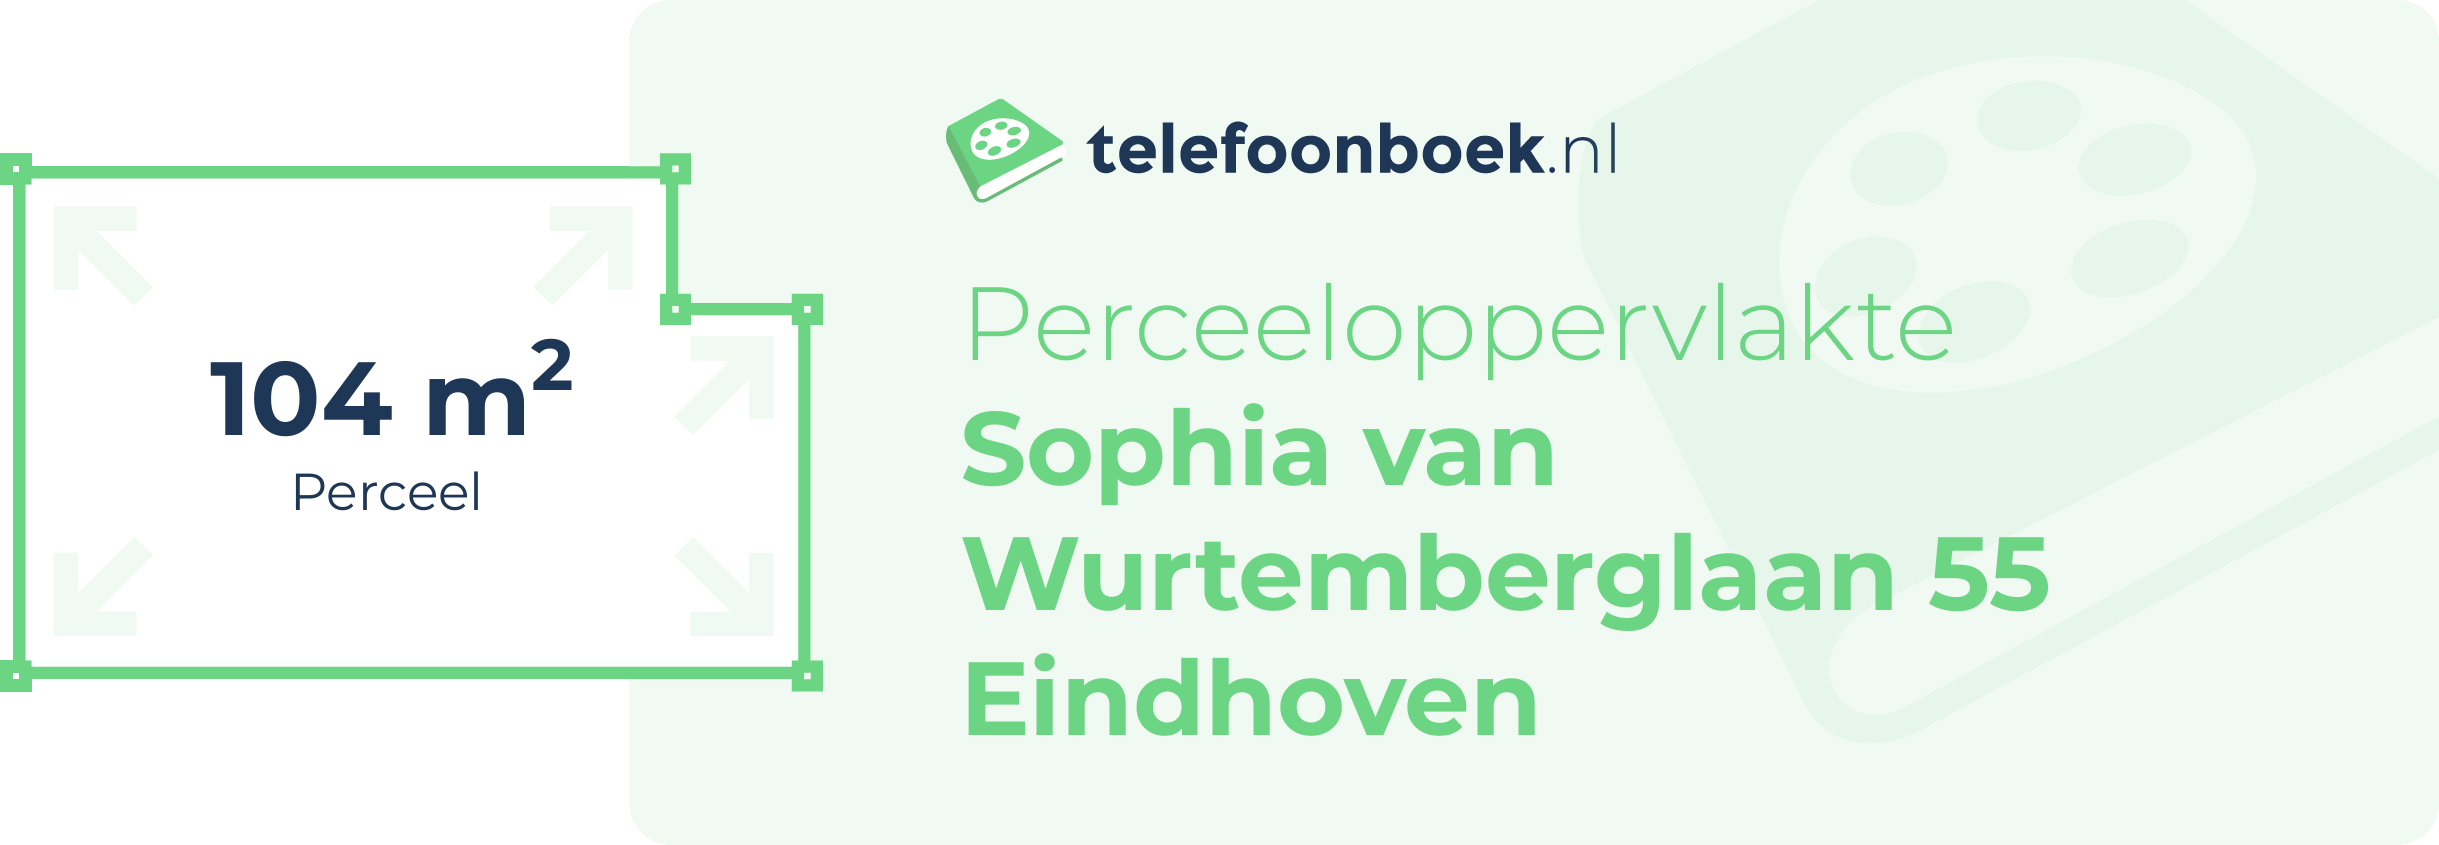 Perceeloppervlakte Sophia Van Wurtemberglaan 55 Eindhoven